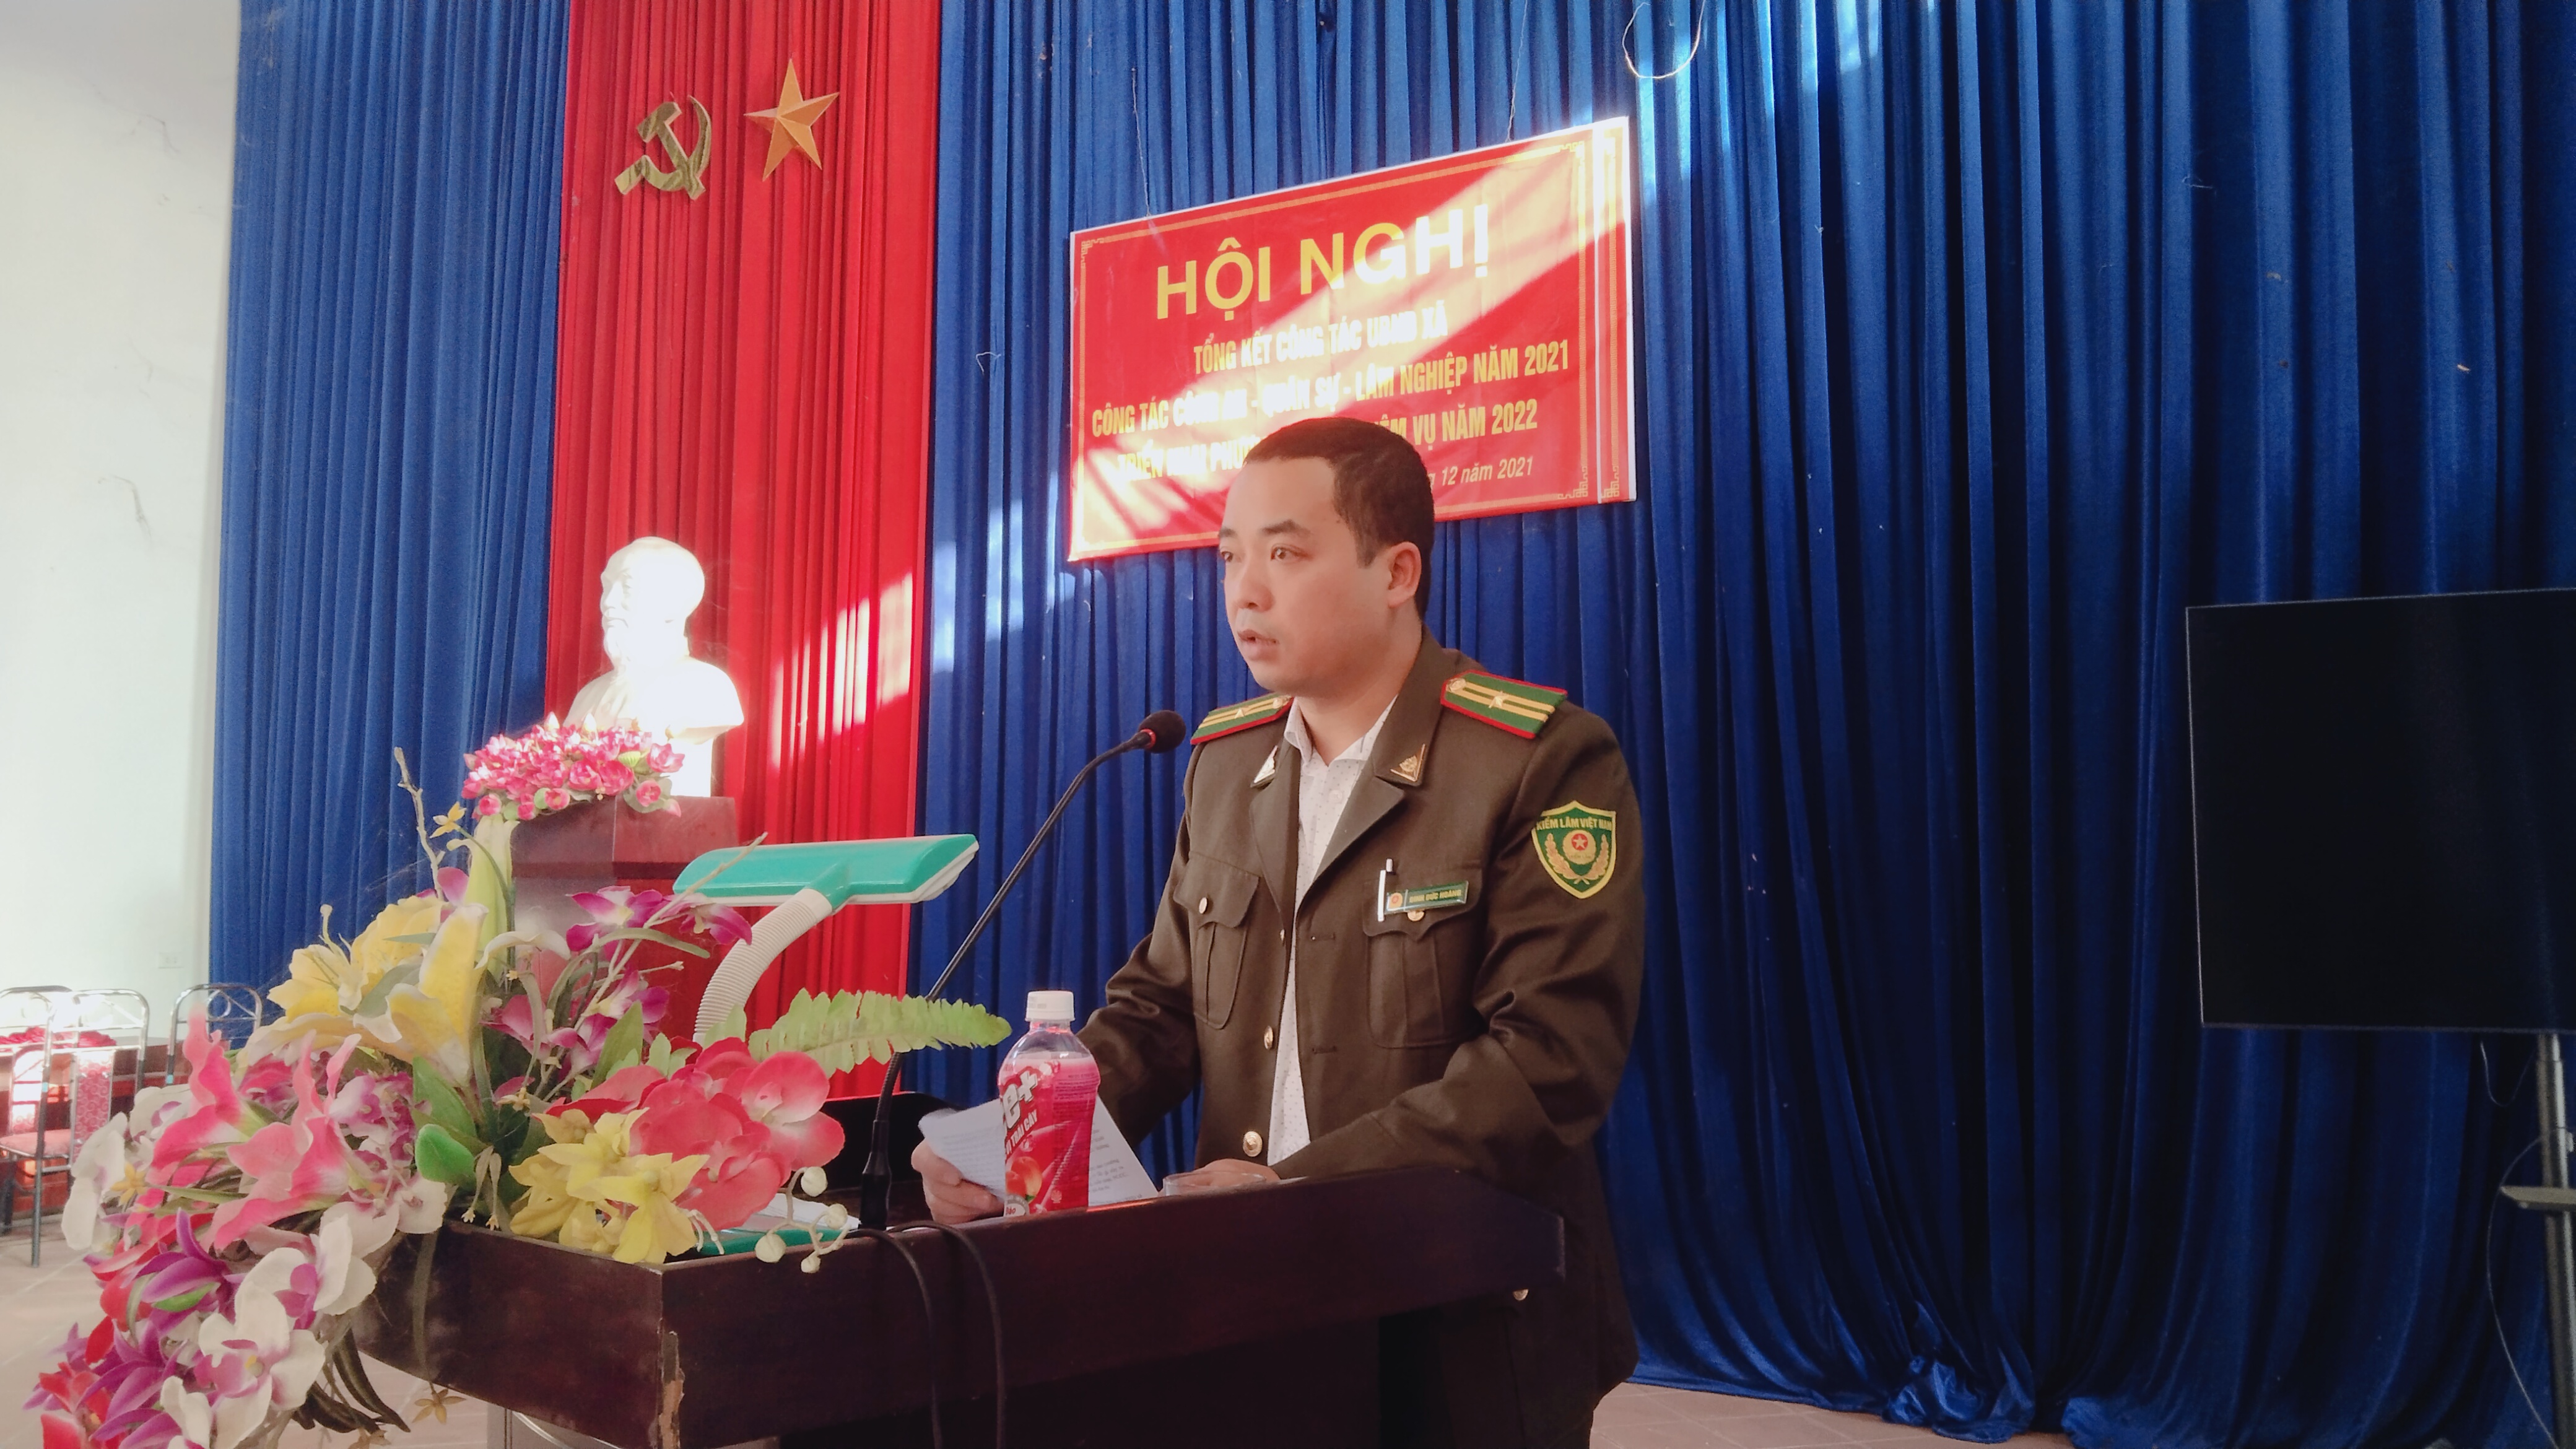 Ông Nguyễn Đức Hoàng -Hạt phó hạt kiểm lâm huyện Phú Lương phát biểu tại hội nghị